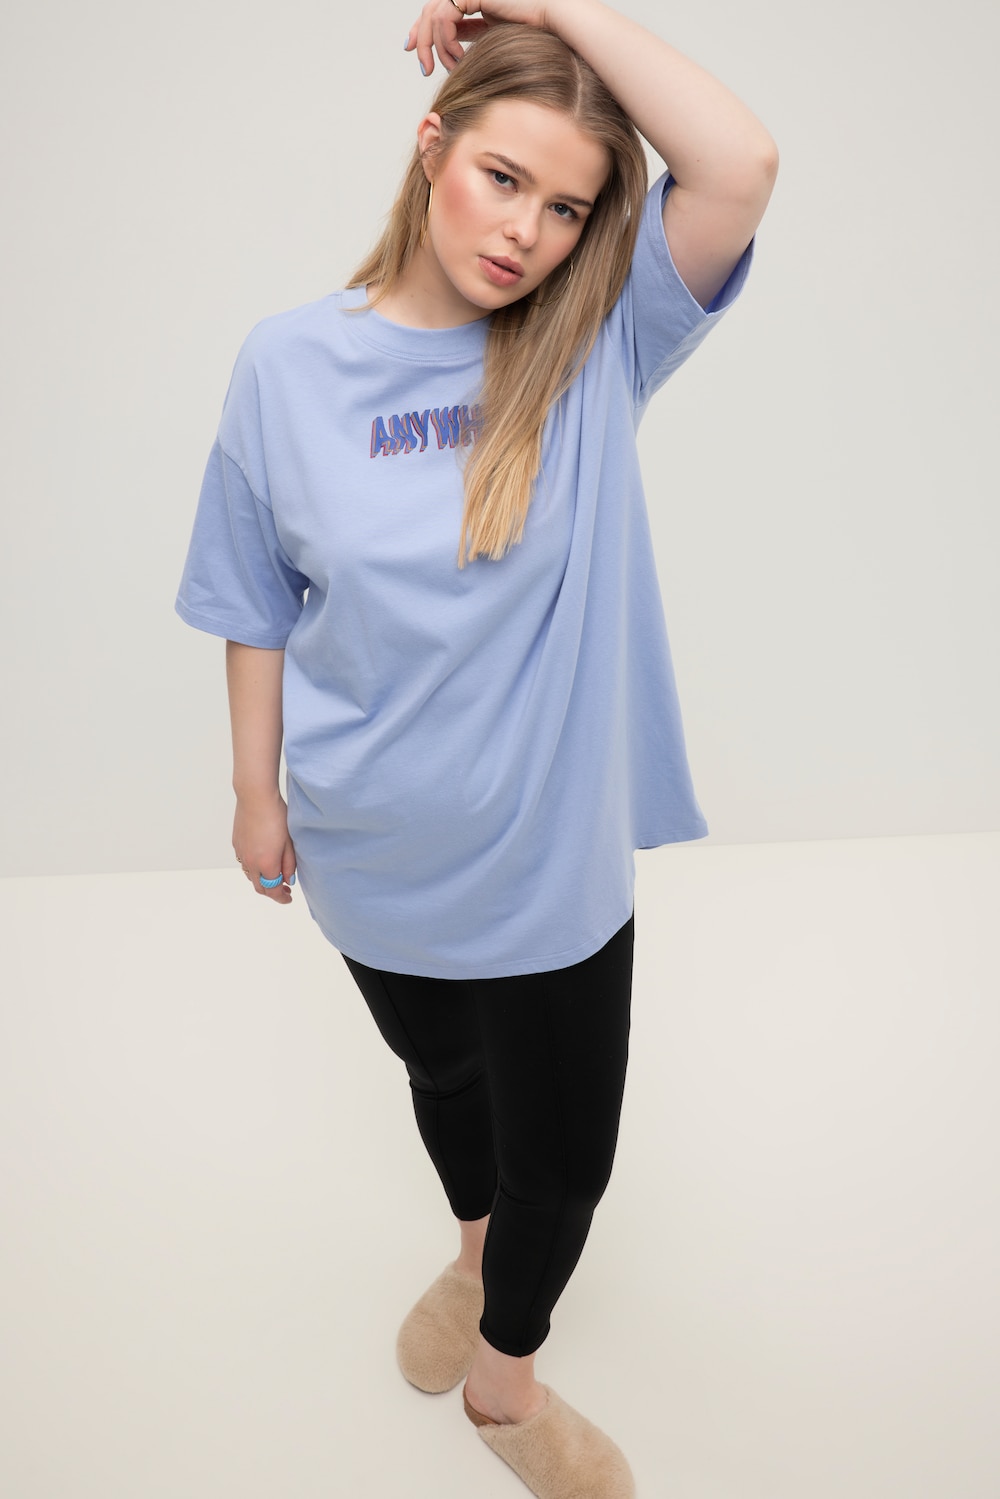 Grote Maten T-shirt, Dames, blauw, Maat: 58/60, Katoen, Studio Untold